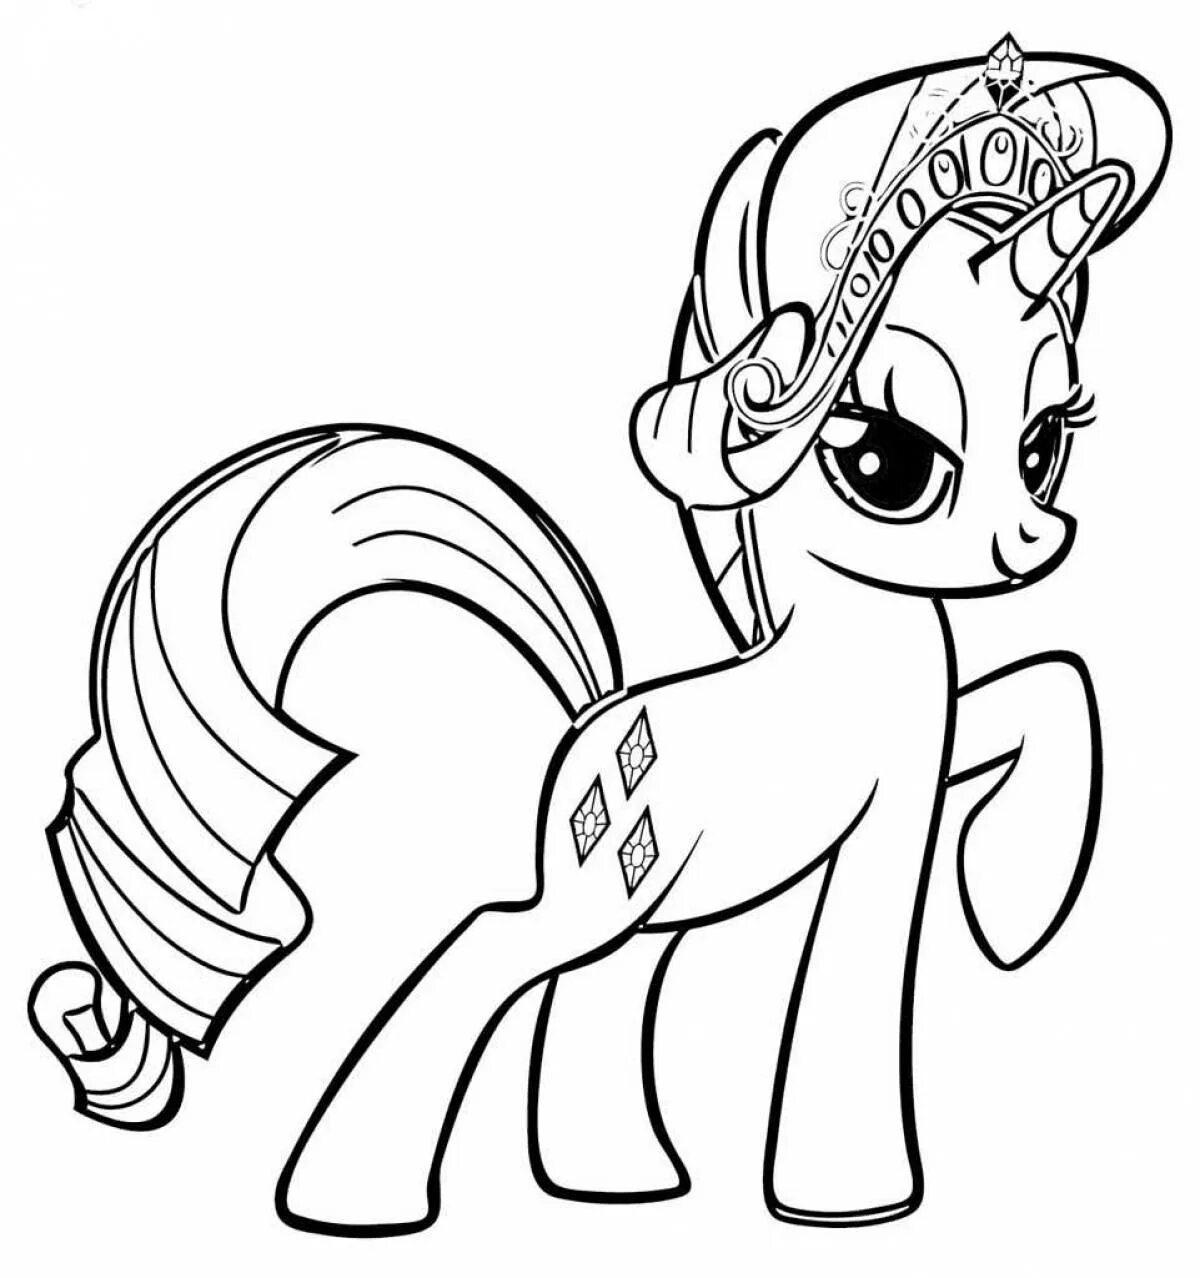 Раскраска пони Рарити. My little Pony раскраска Рарити. Раскраска пони Рарити принцесса. Раскраски мой маленький пони Рарити. Раскраска кетнеп распечатать раскраски